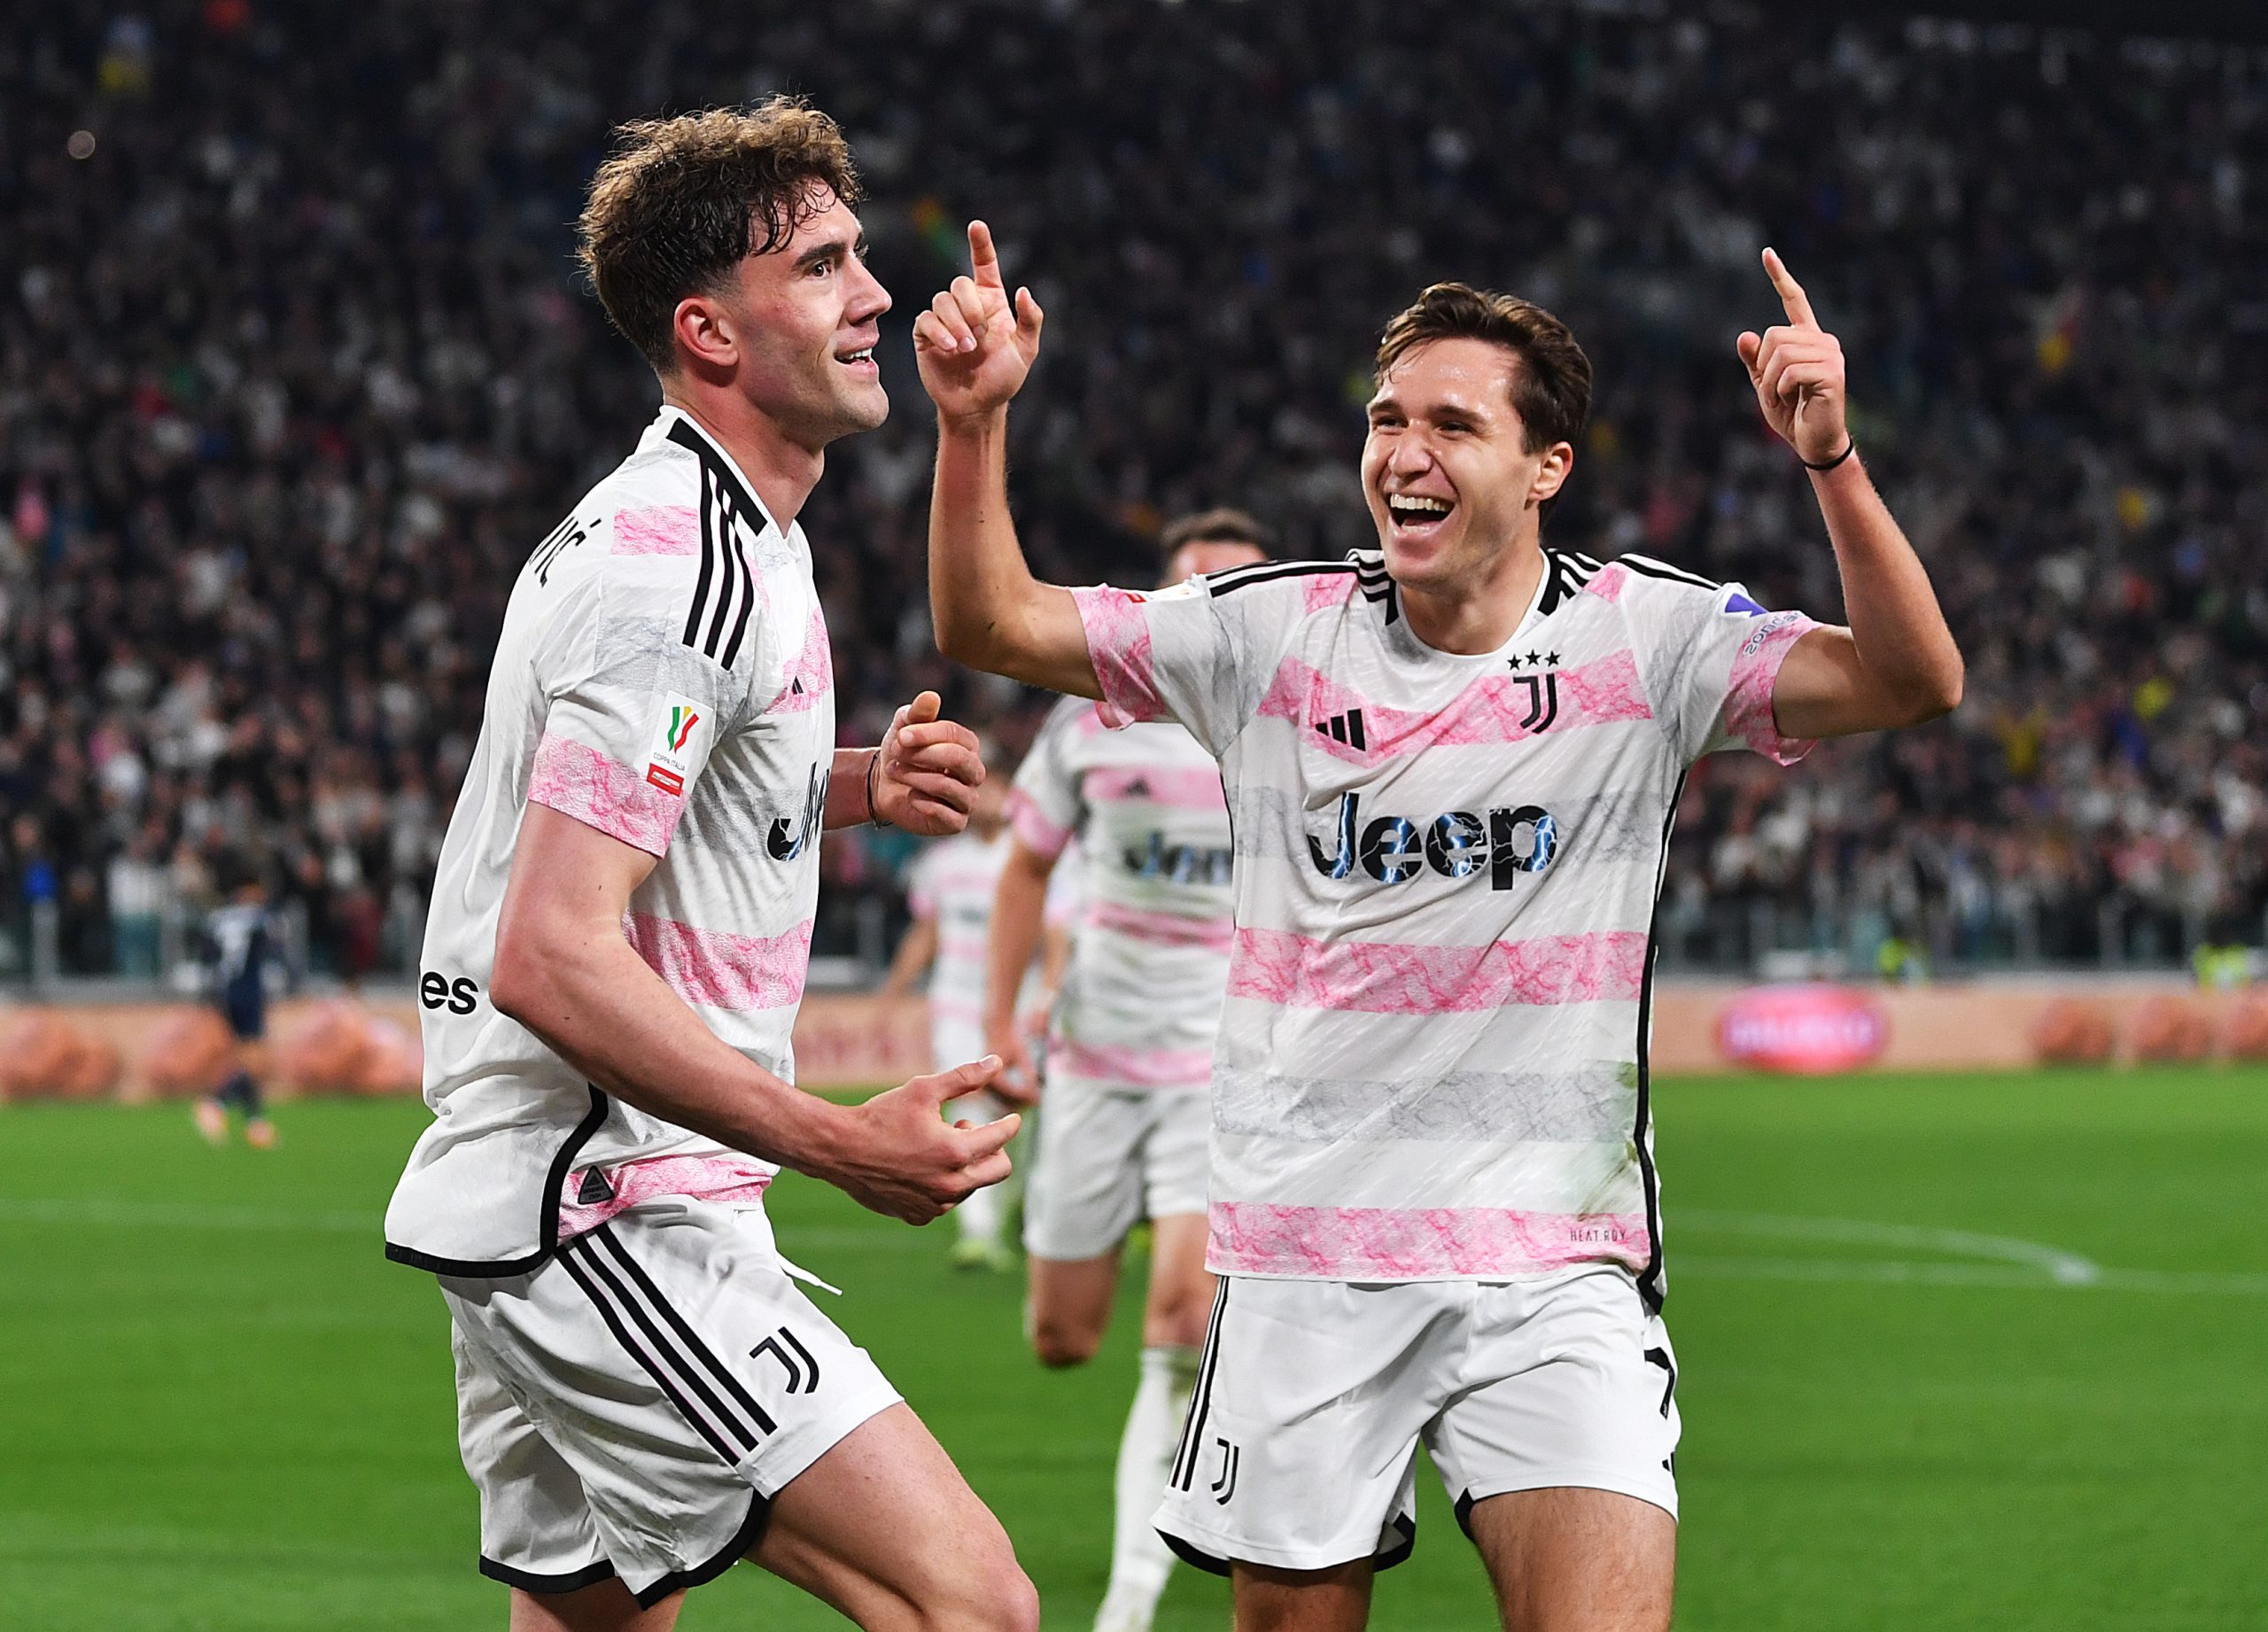 VIDEO – Juventus-Monza 2-0, Serie A: gol e highlights della partita